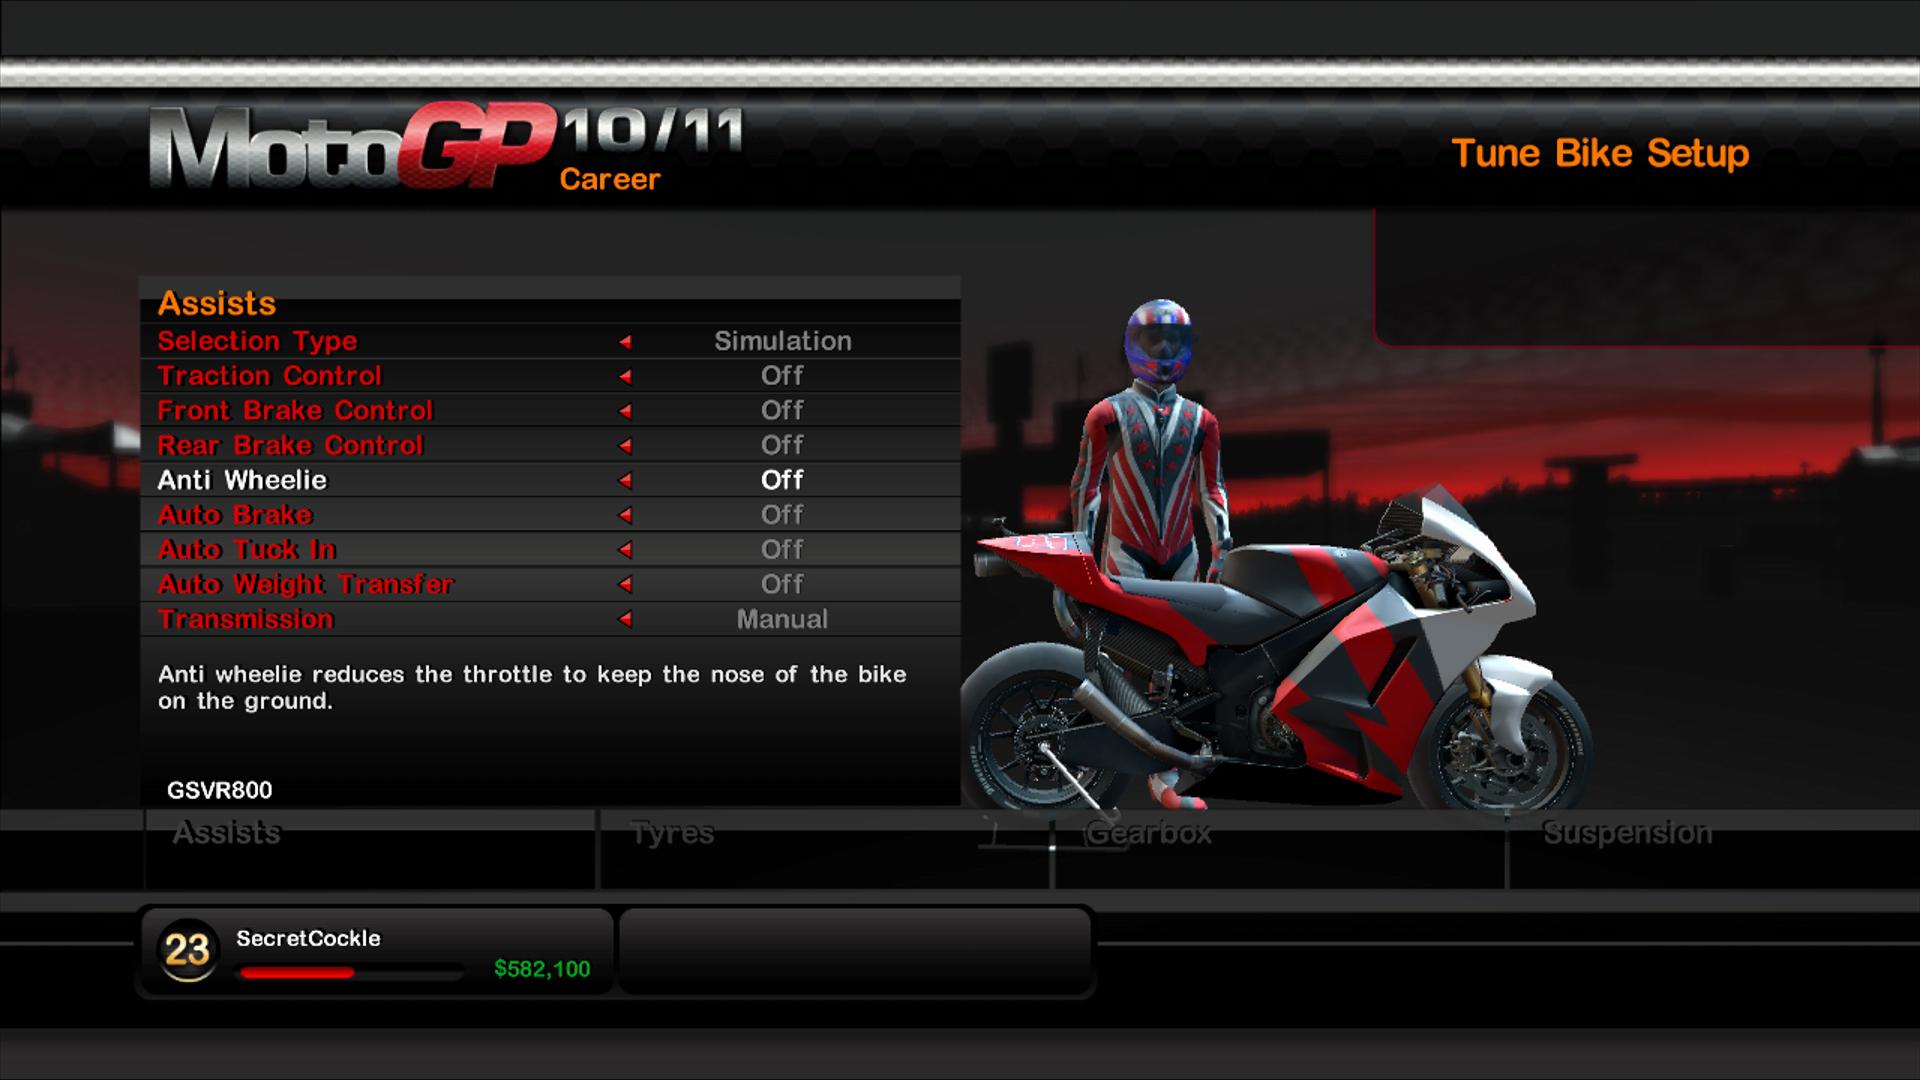 MotoGP10 11 mode carriere oosgame [trailer] Moto GP 10/11, la course moto sur Xbox 360 et PS3, cest parti !